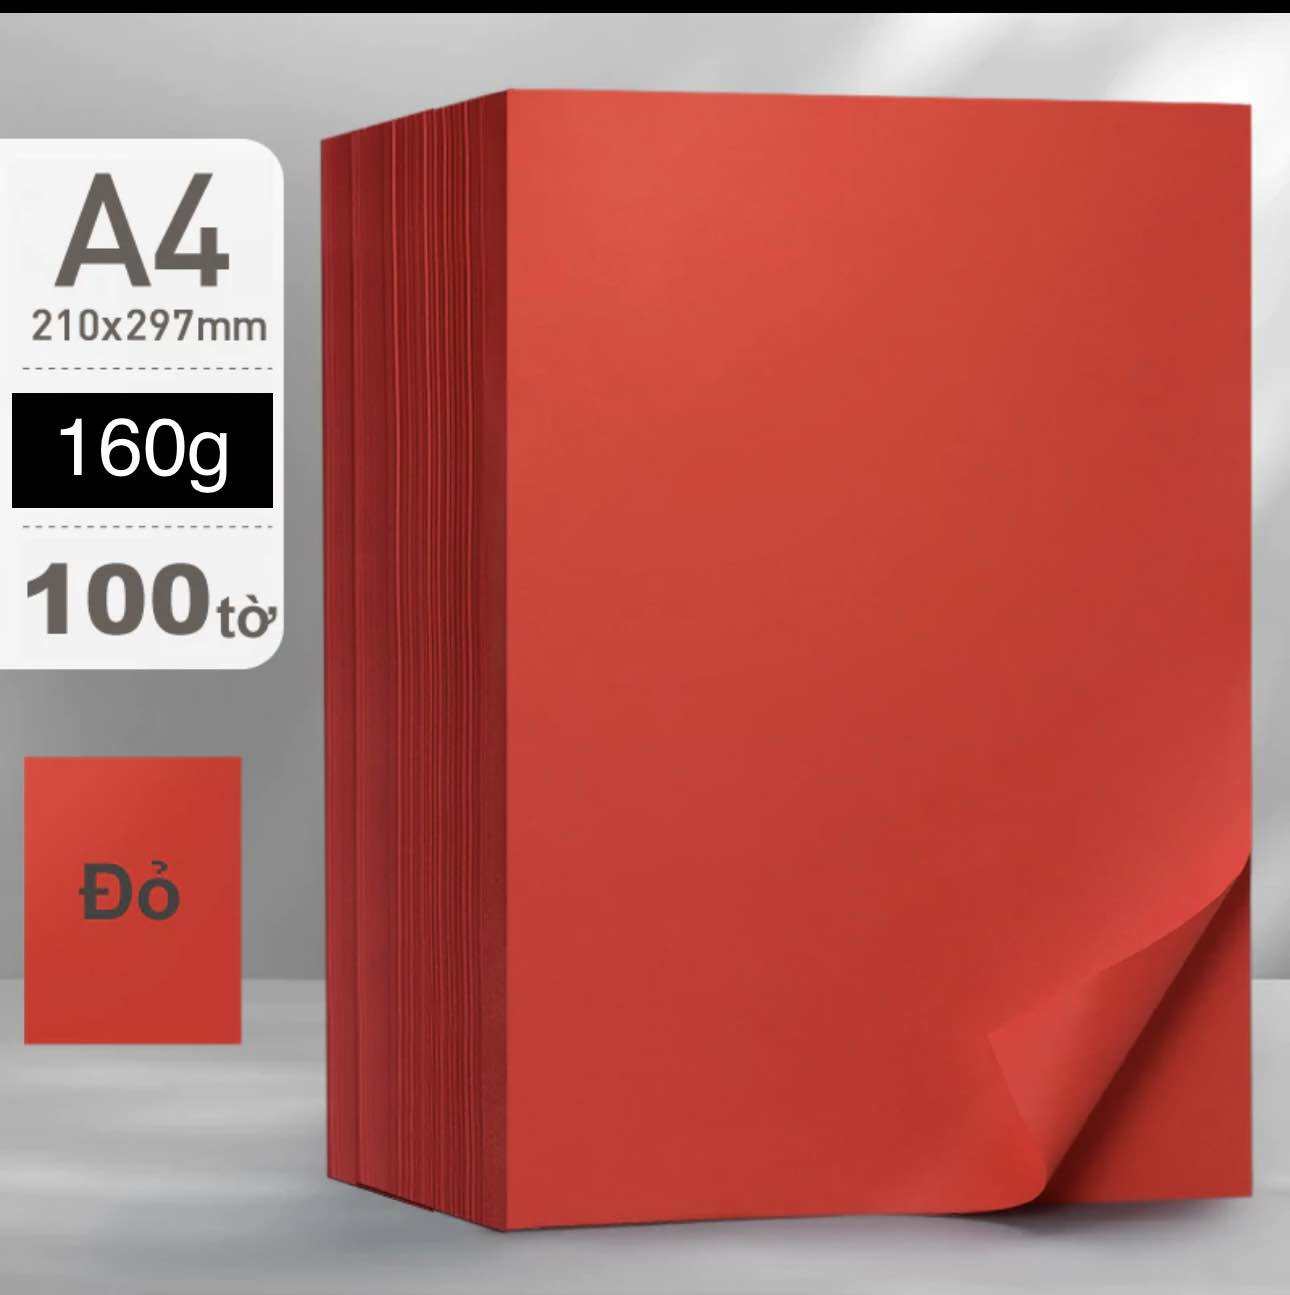 Tập 100 tờ giấy bìa màu đỏ tươi 2 mặt định lượng 160gsm khổ A4